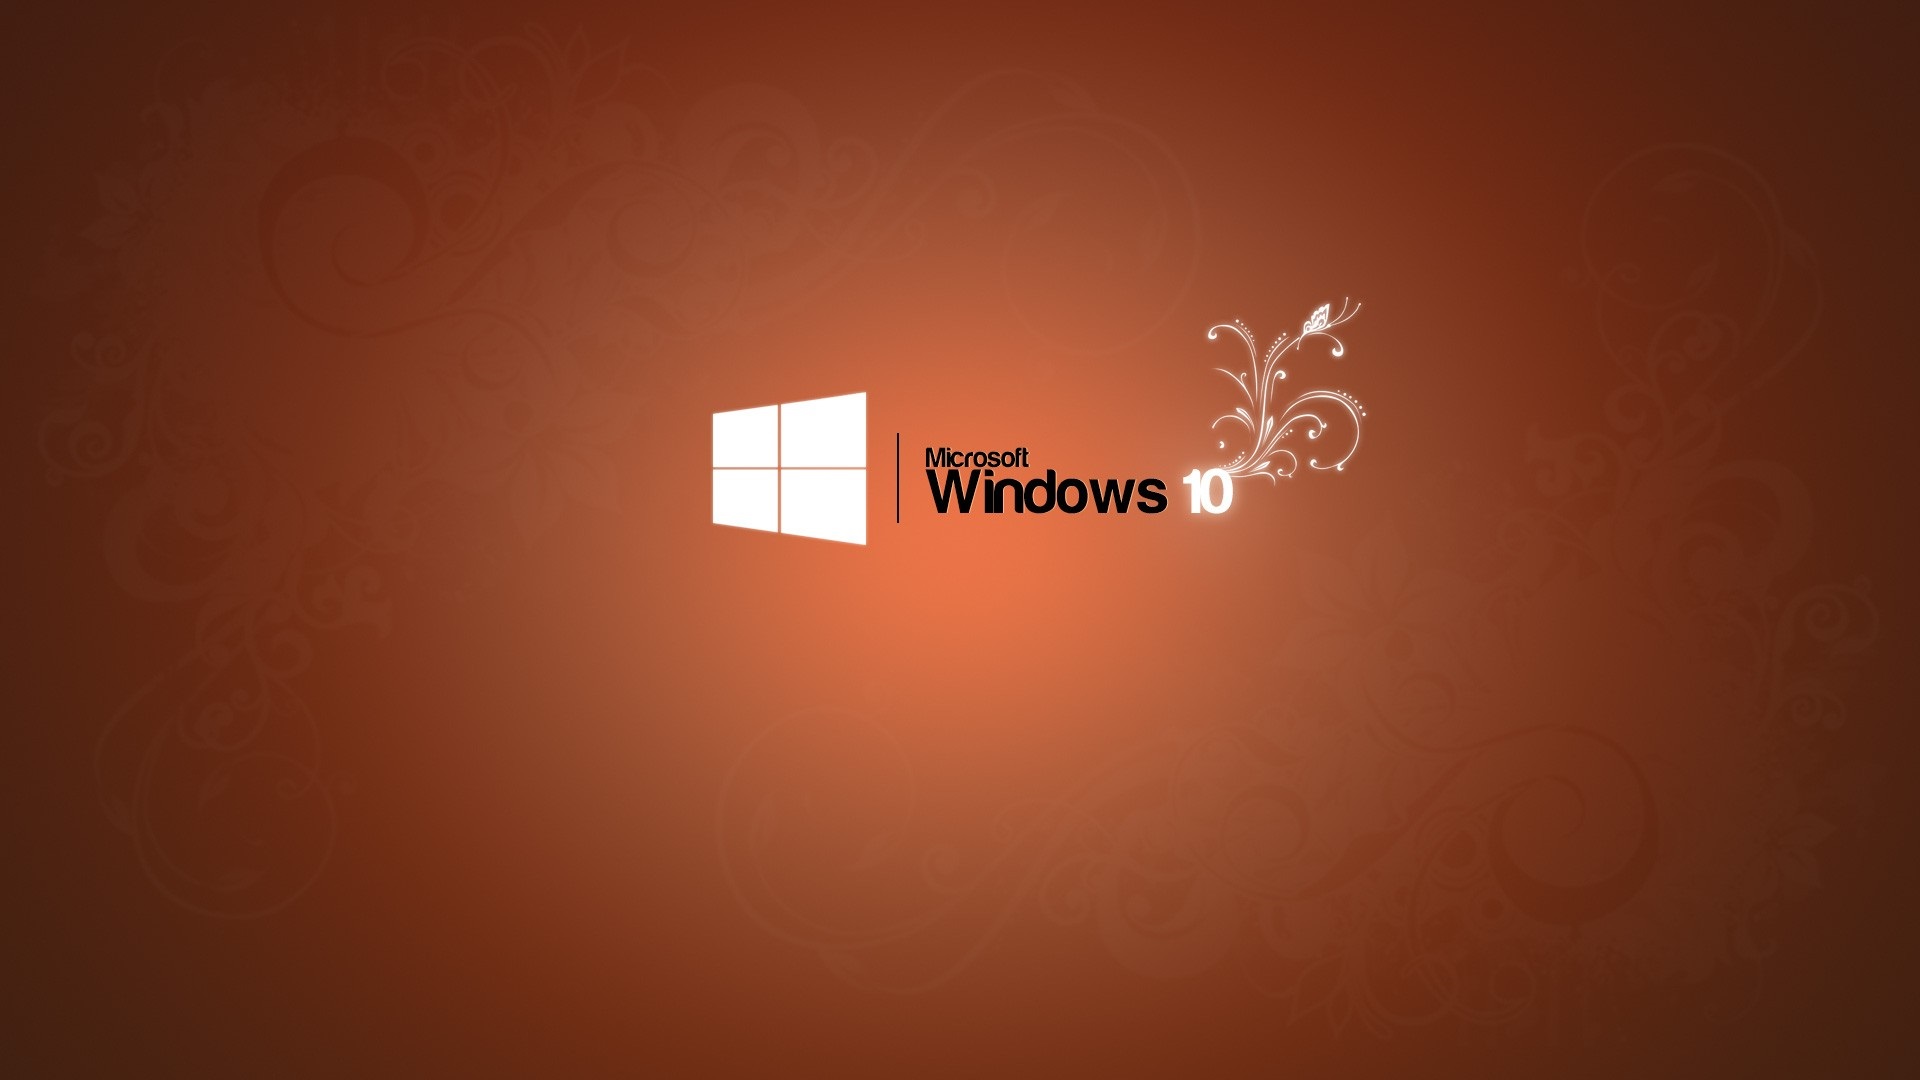 微软windows10系统徽标创意高清壁纸-pchome桌面壁纸